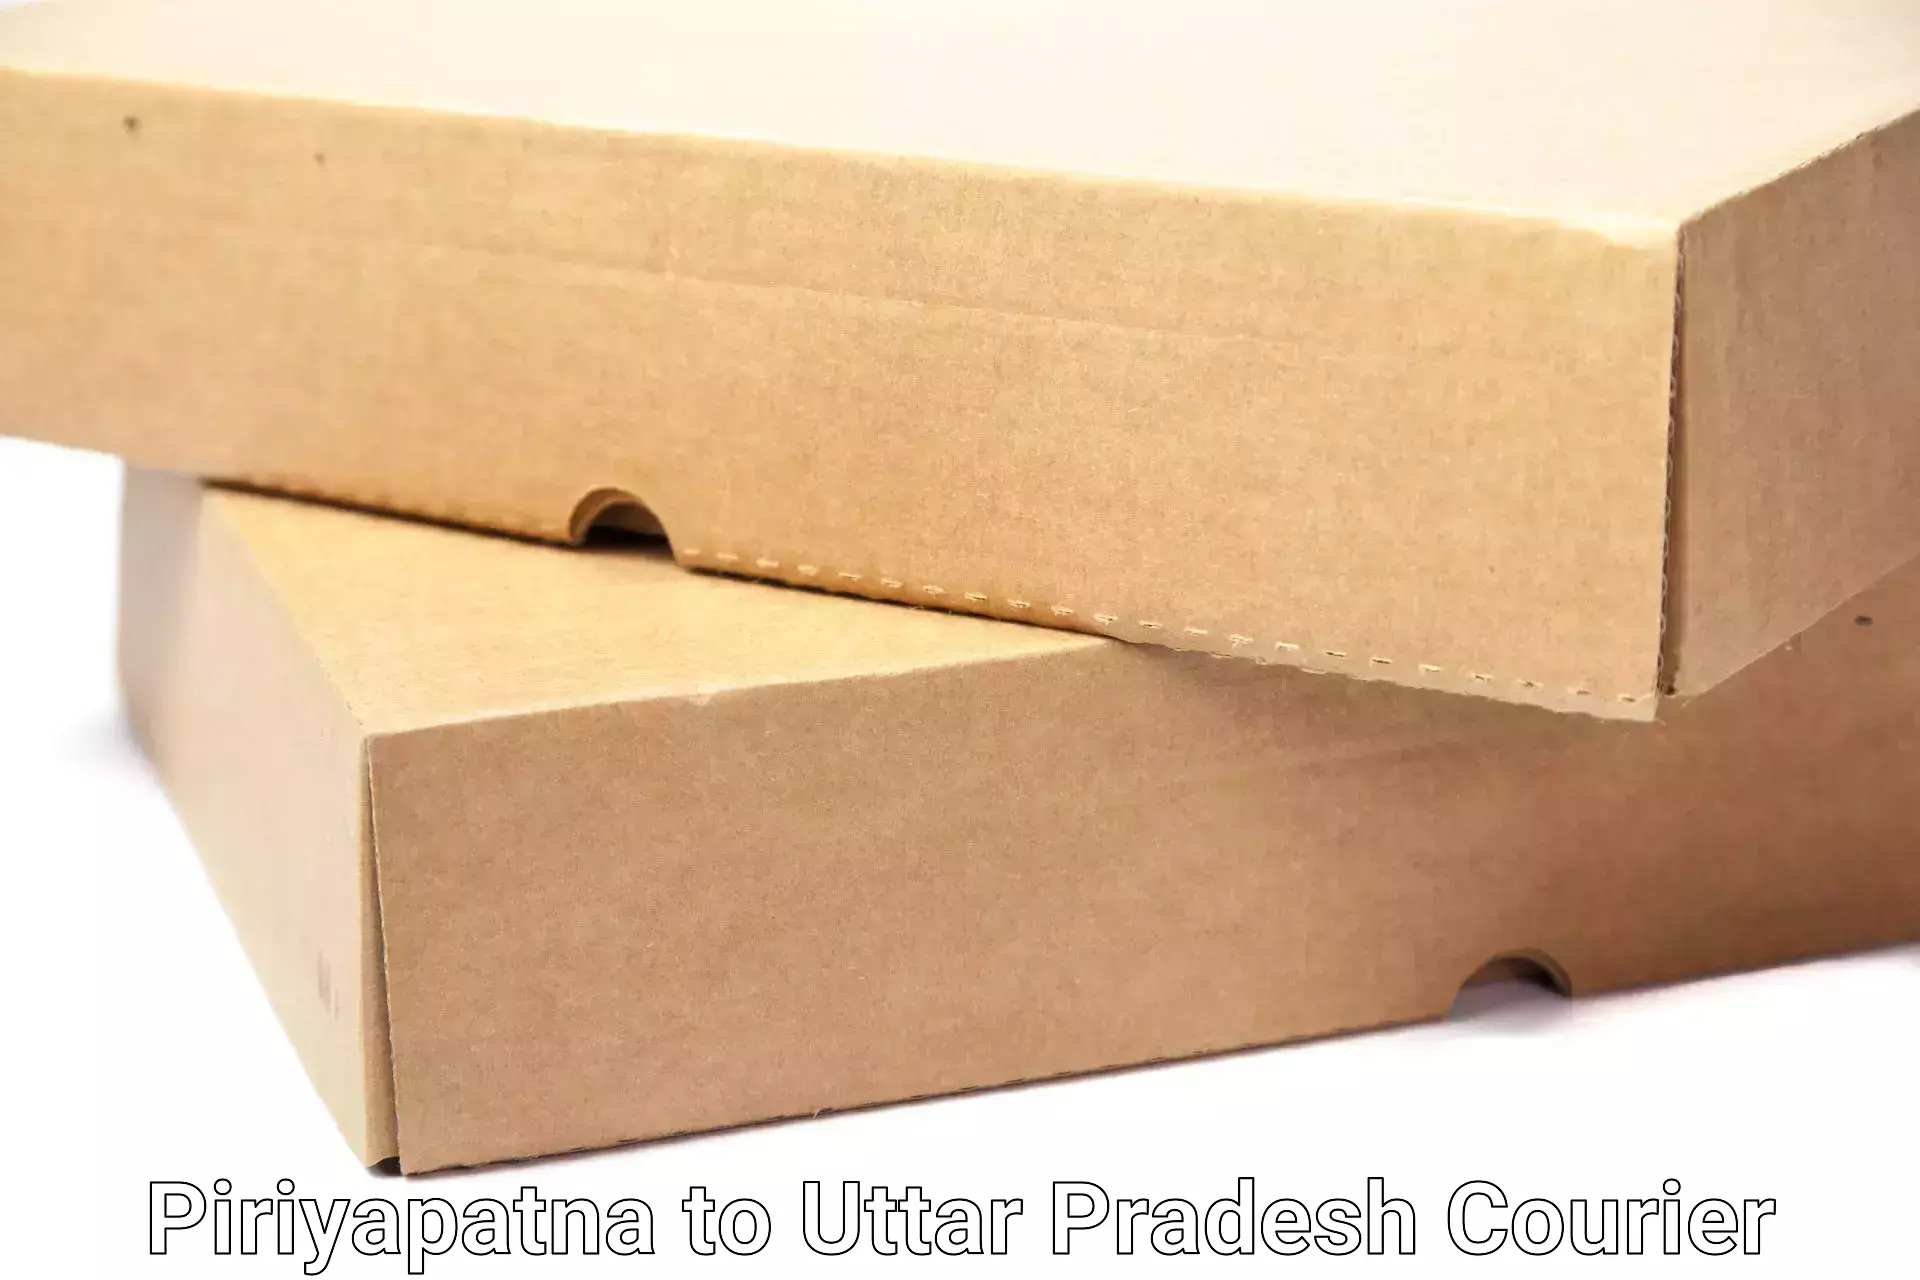 Efficient household moving Piriyapatna to Uttar Pradesh